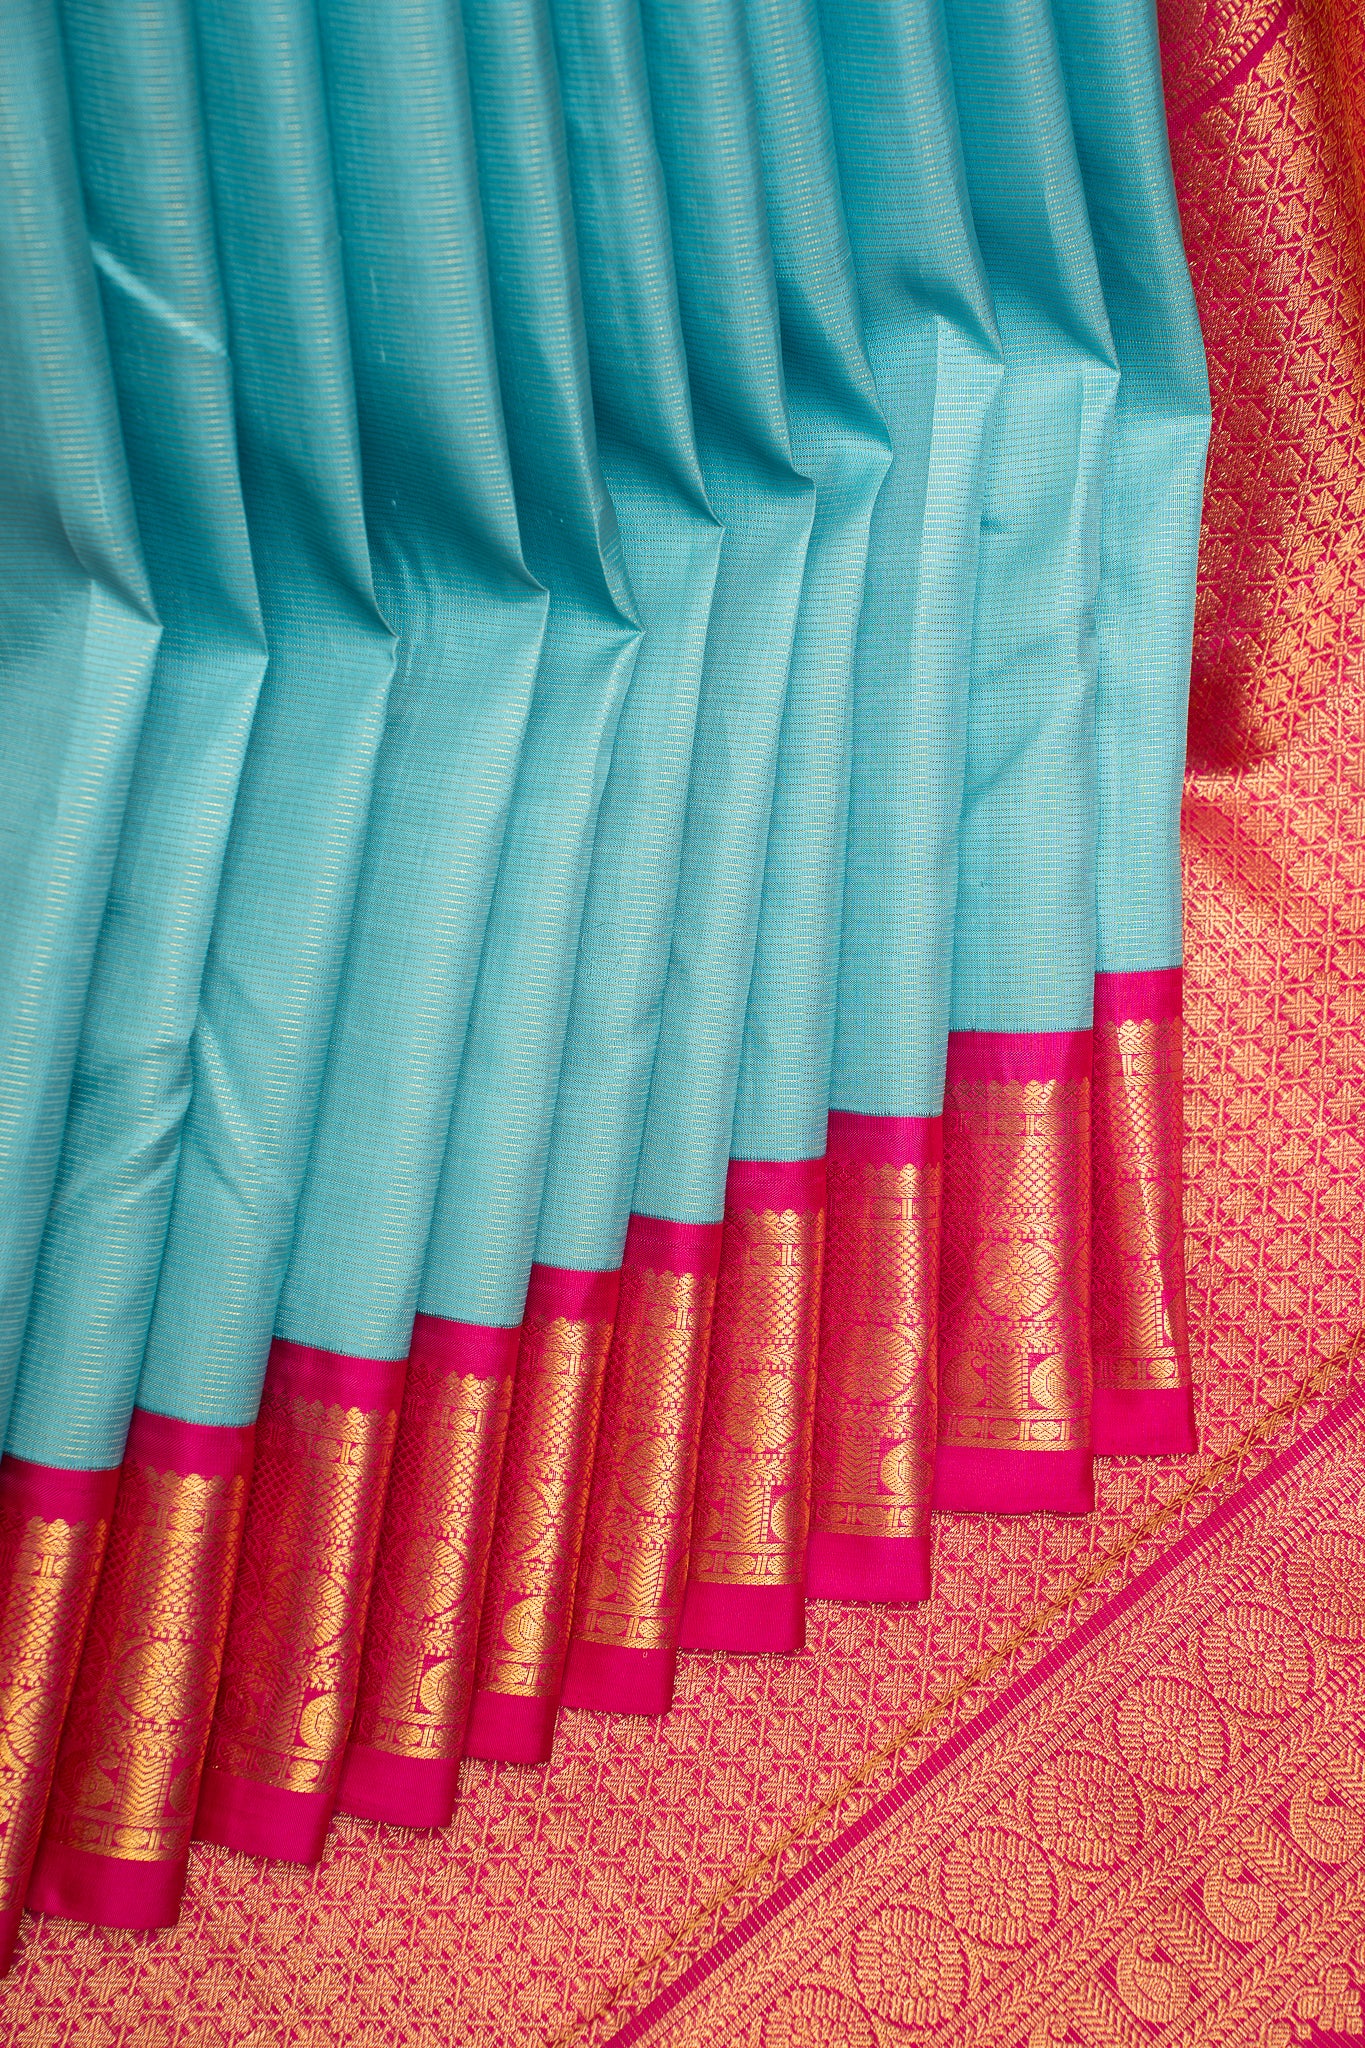 Turquoise Blue Vairaoosi Pure Kanchipuram Silk Saree - Clio Silks